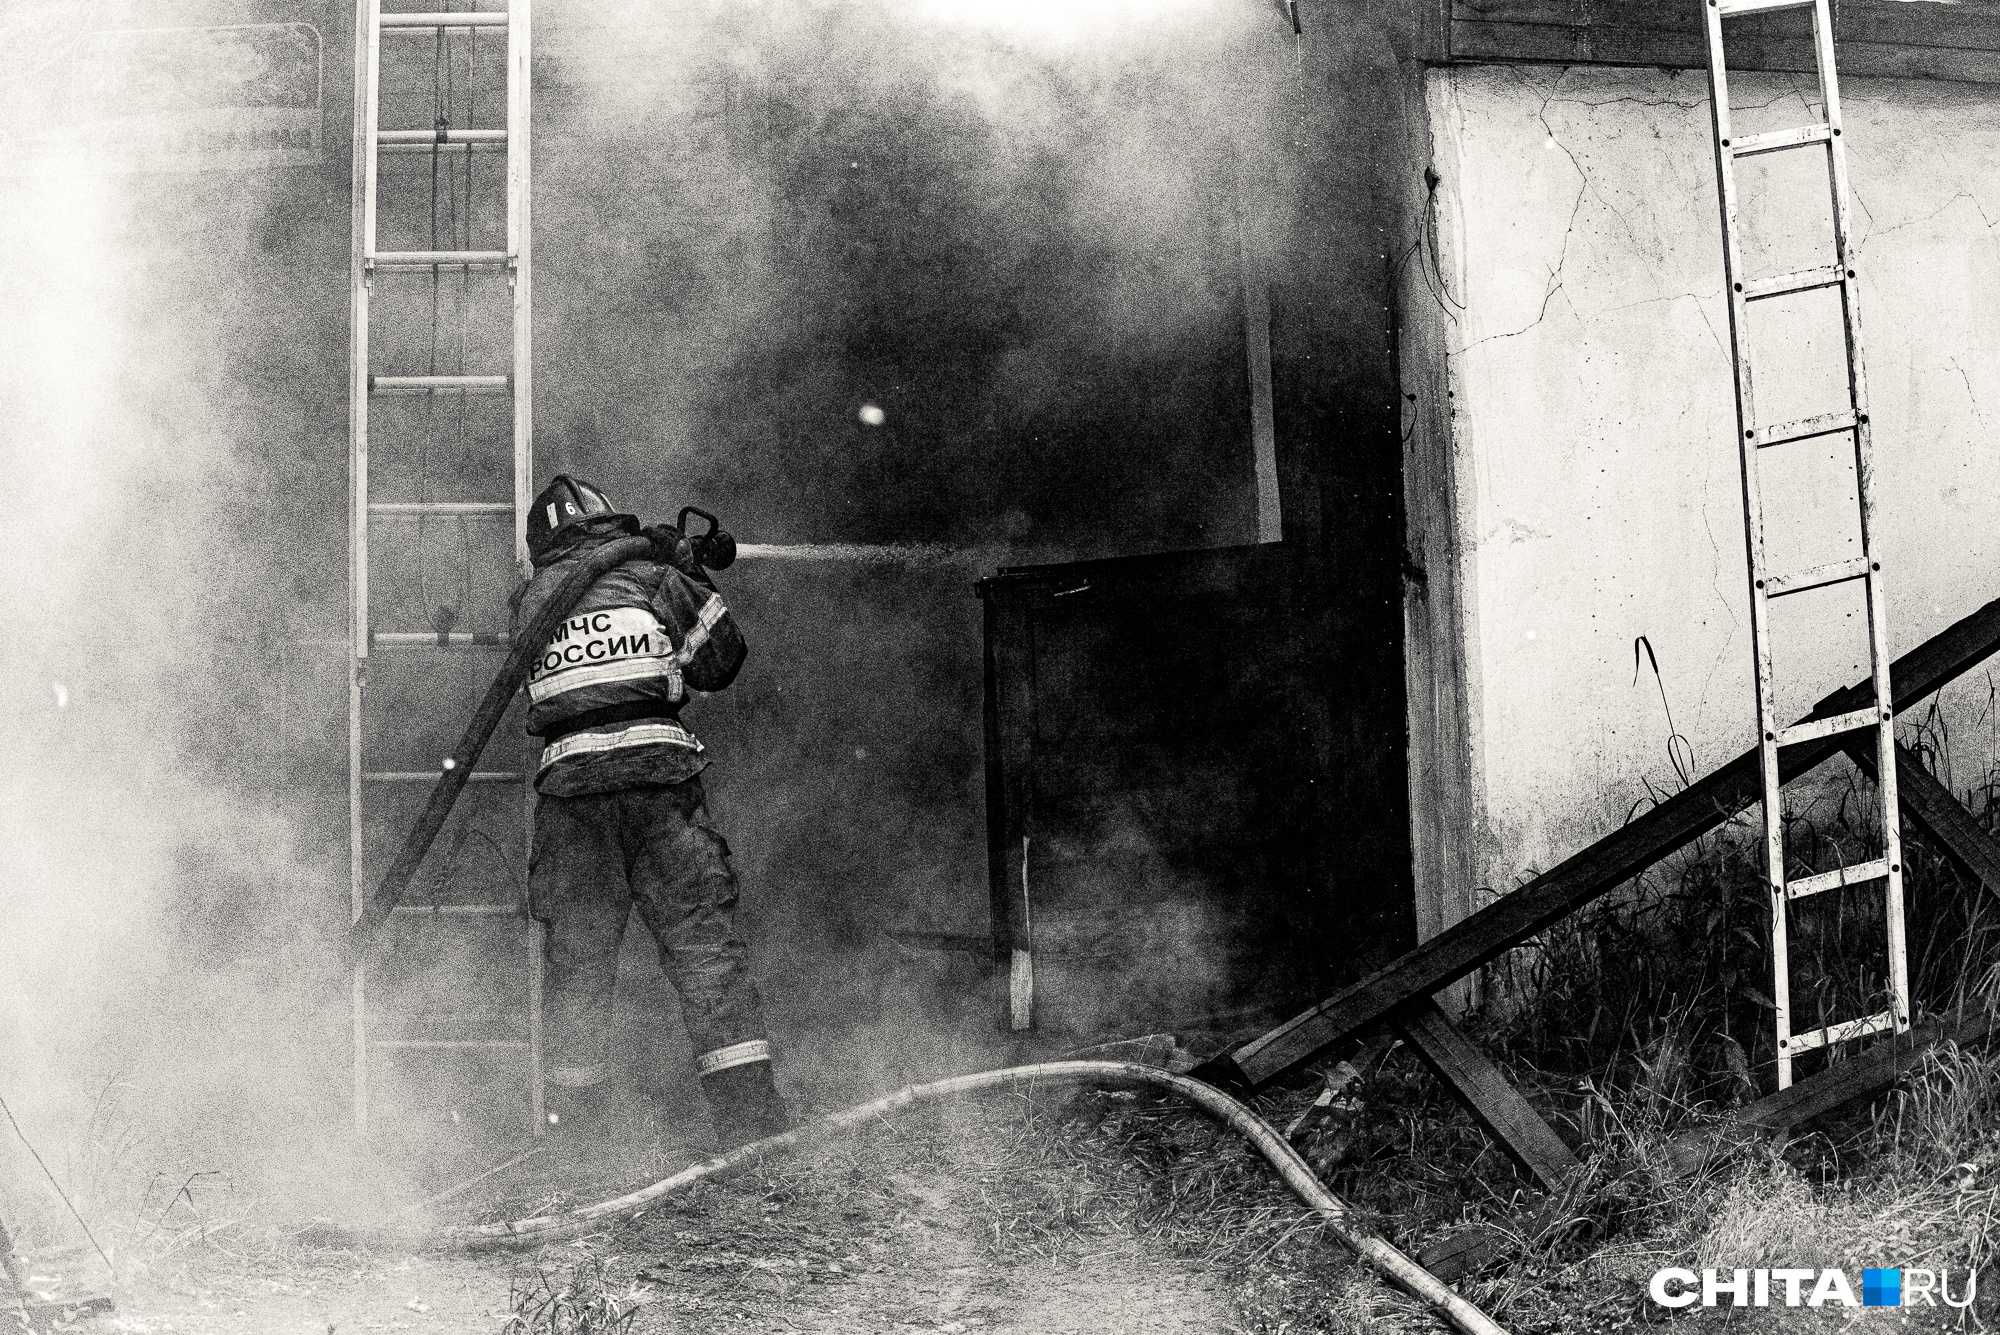 Пожарные спасли мужчину из загоревшегося кафе в Забайкалье